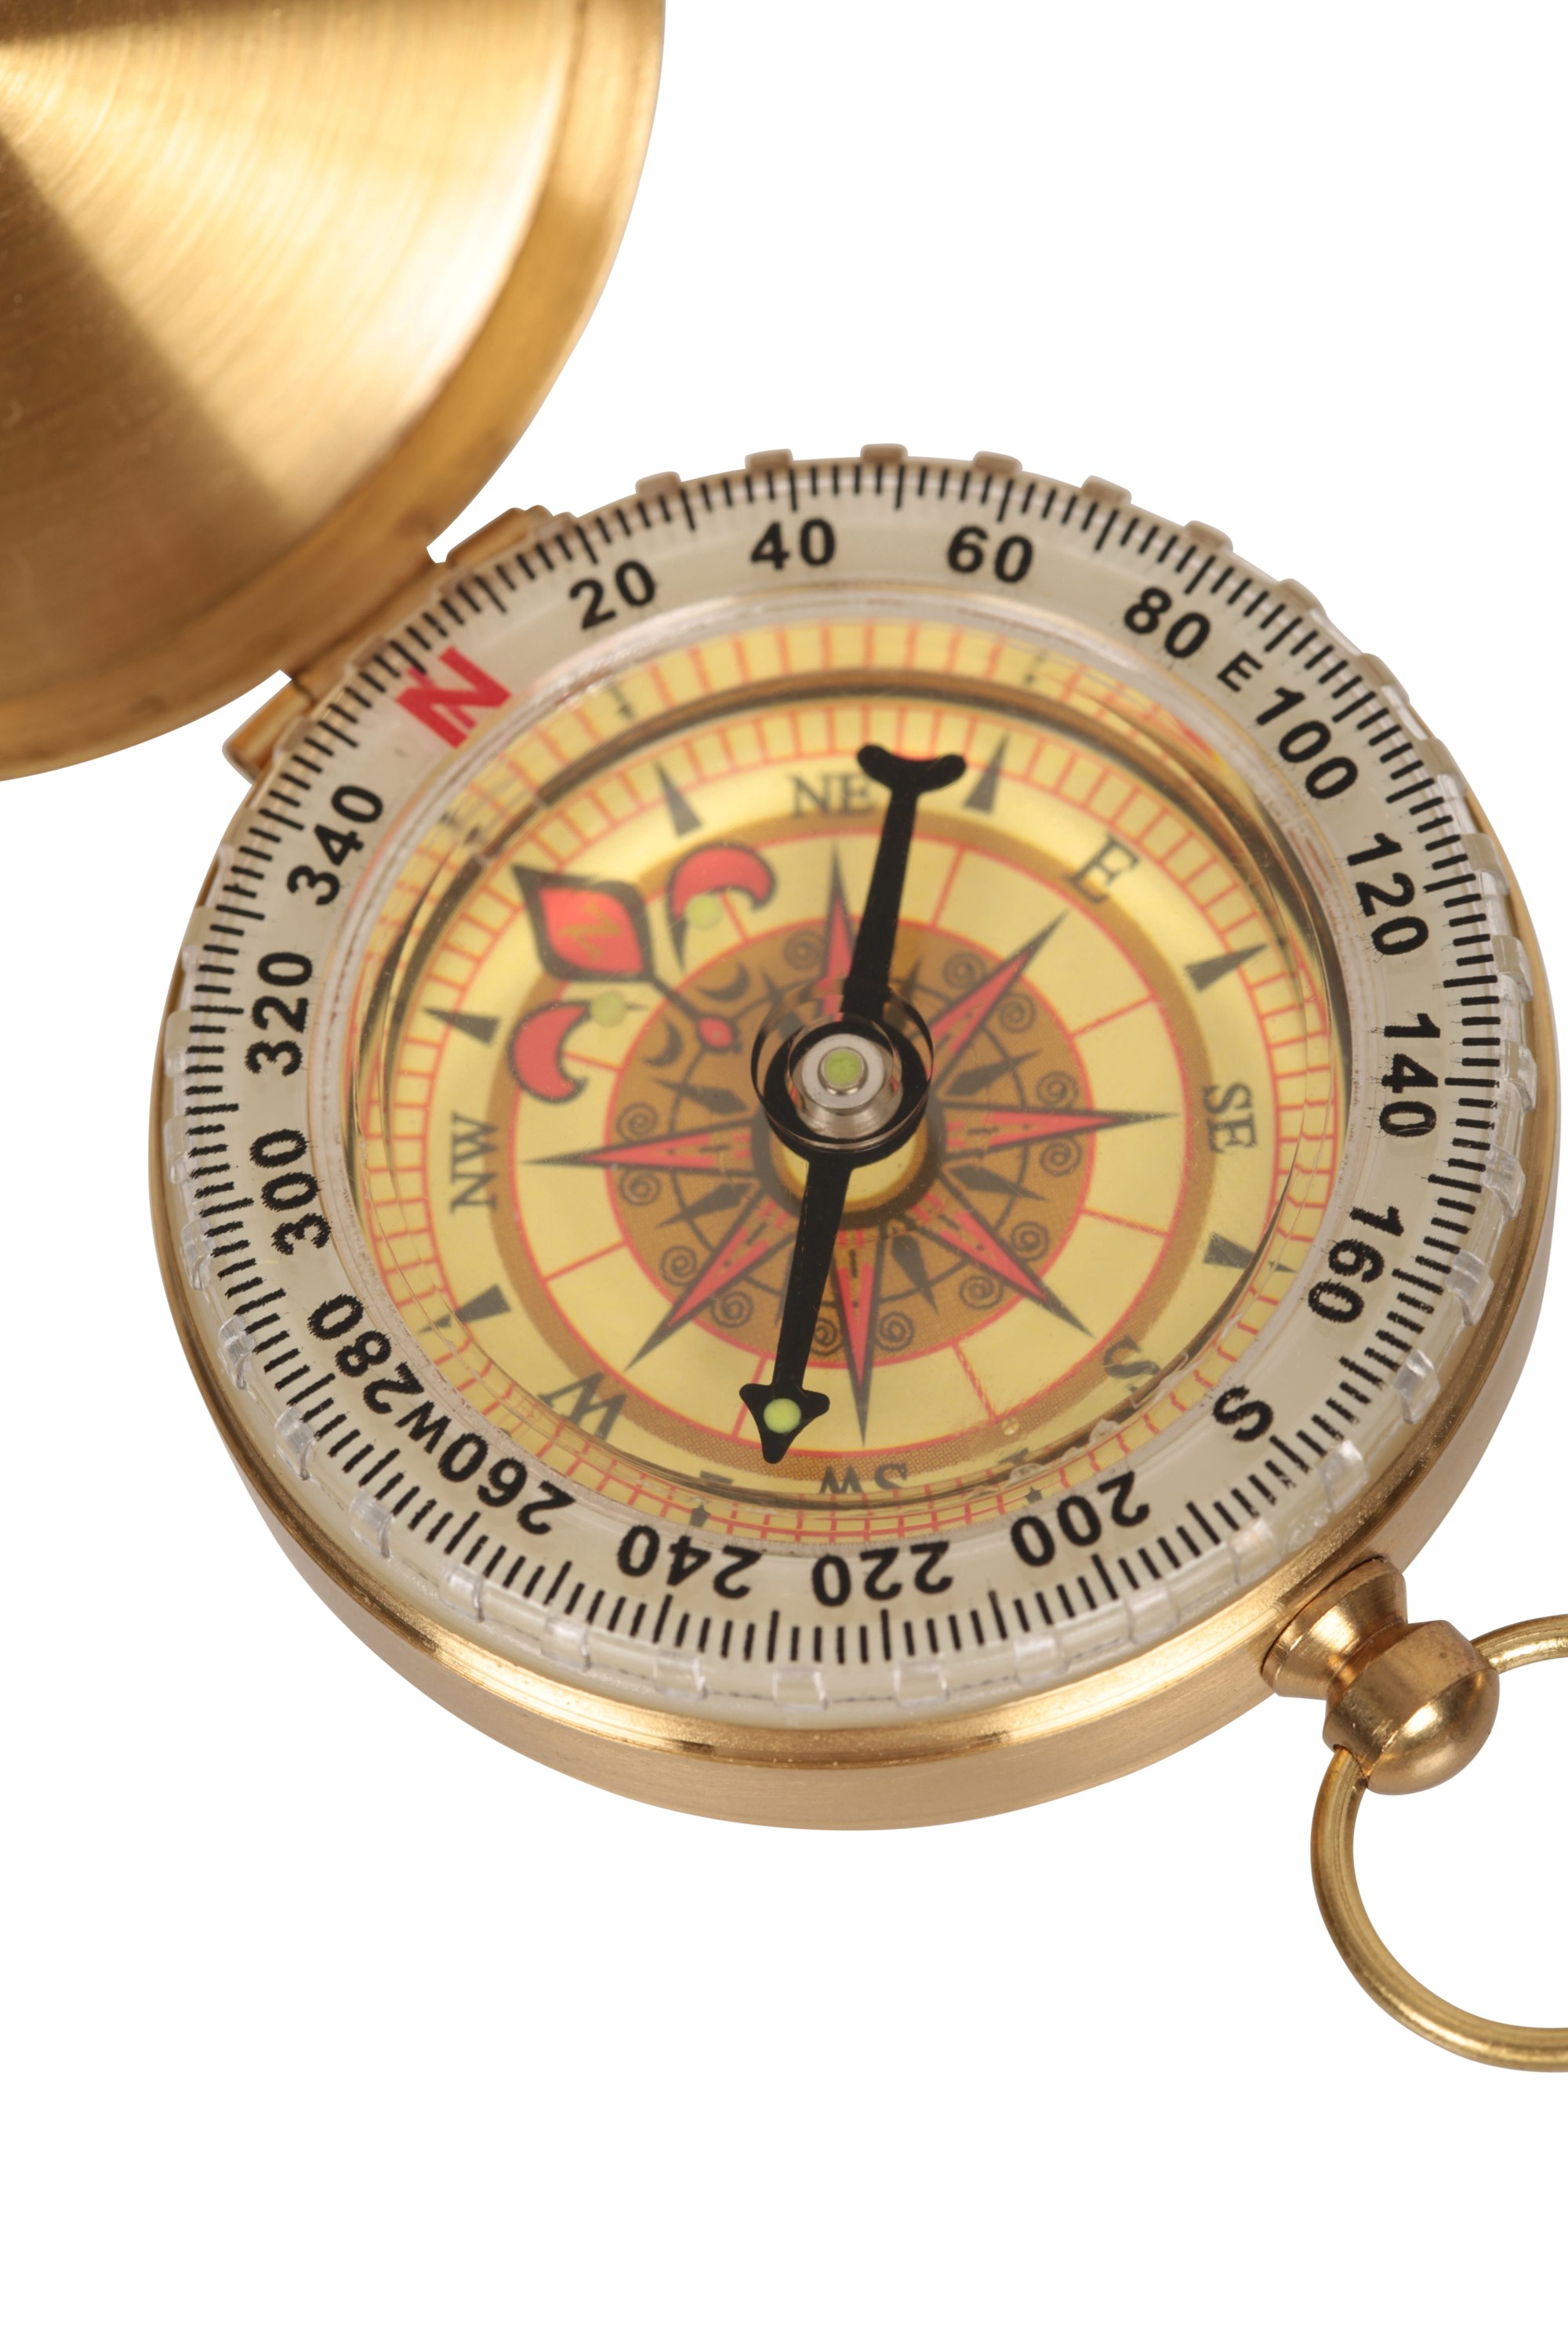 Classic Brass Compass Outdoor Equipment